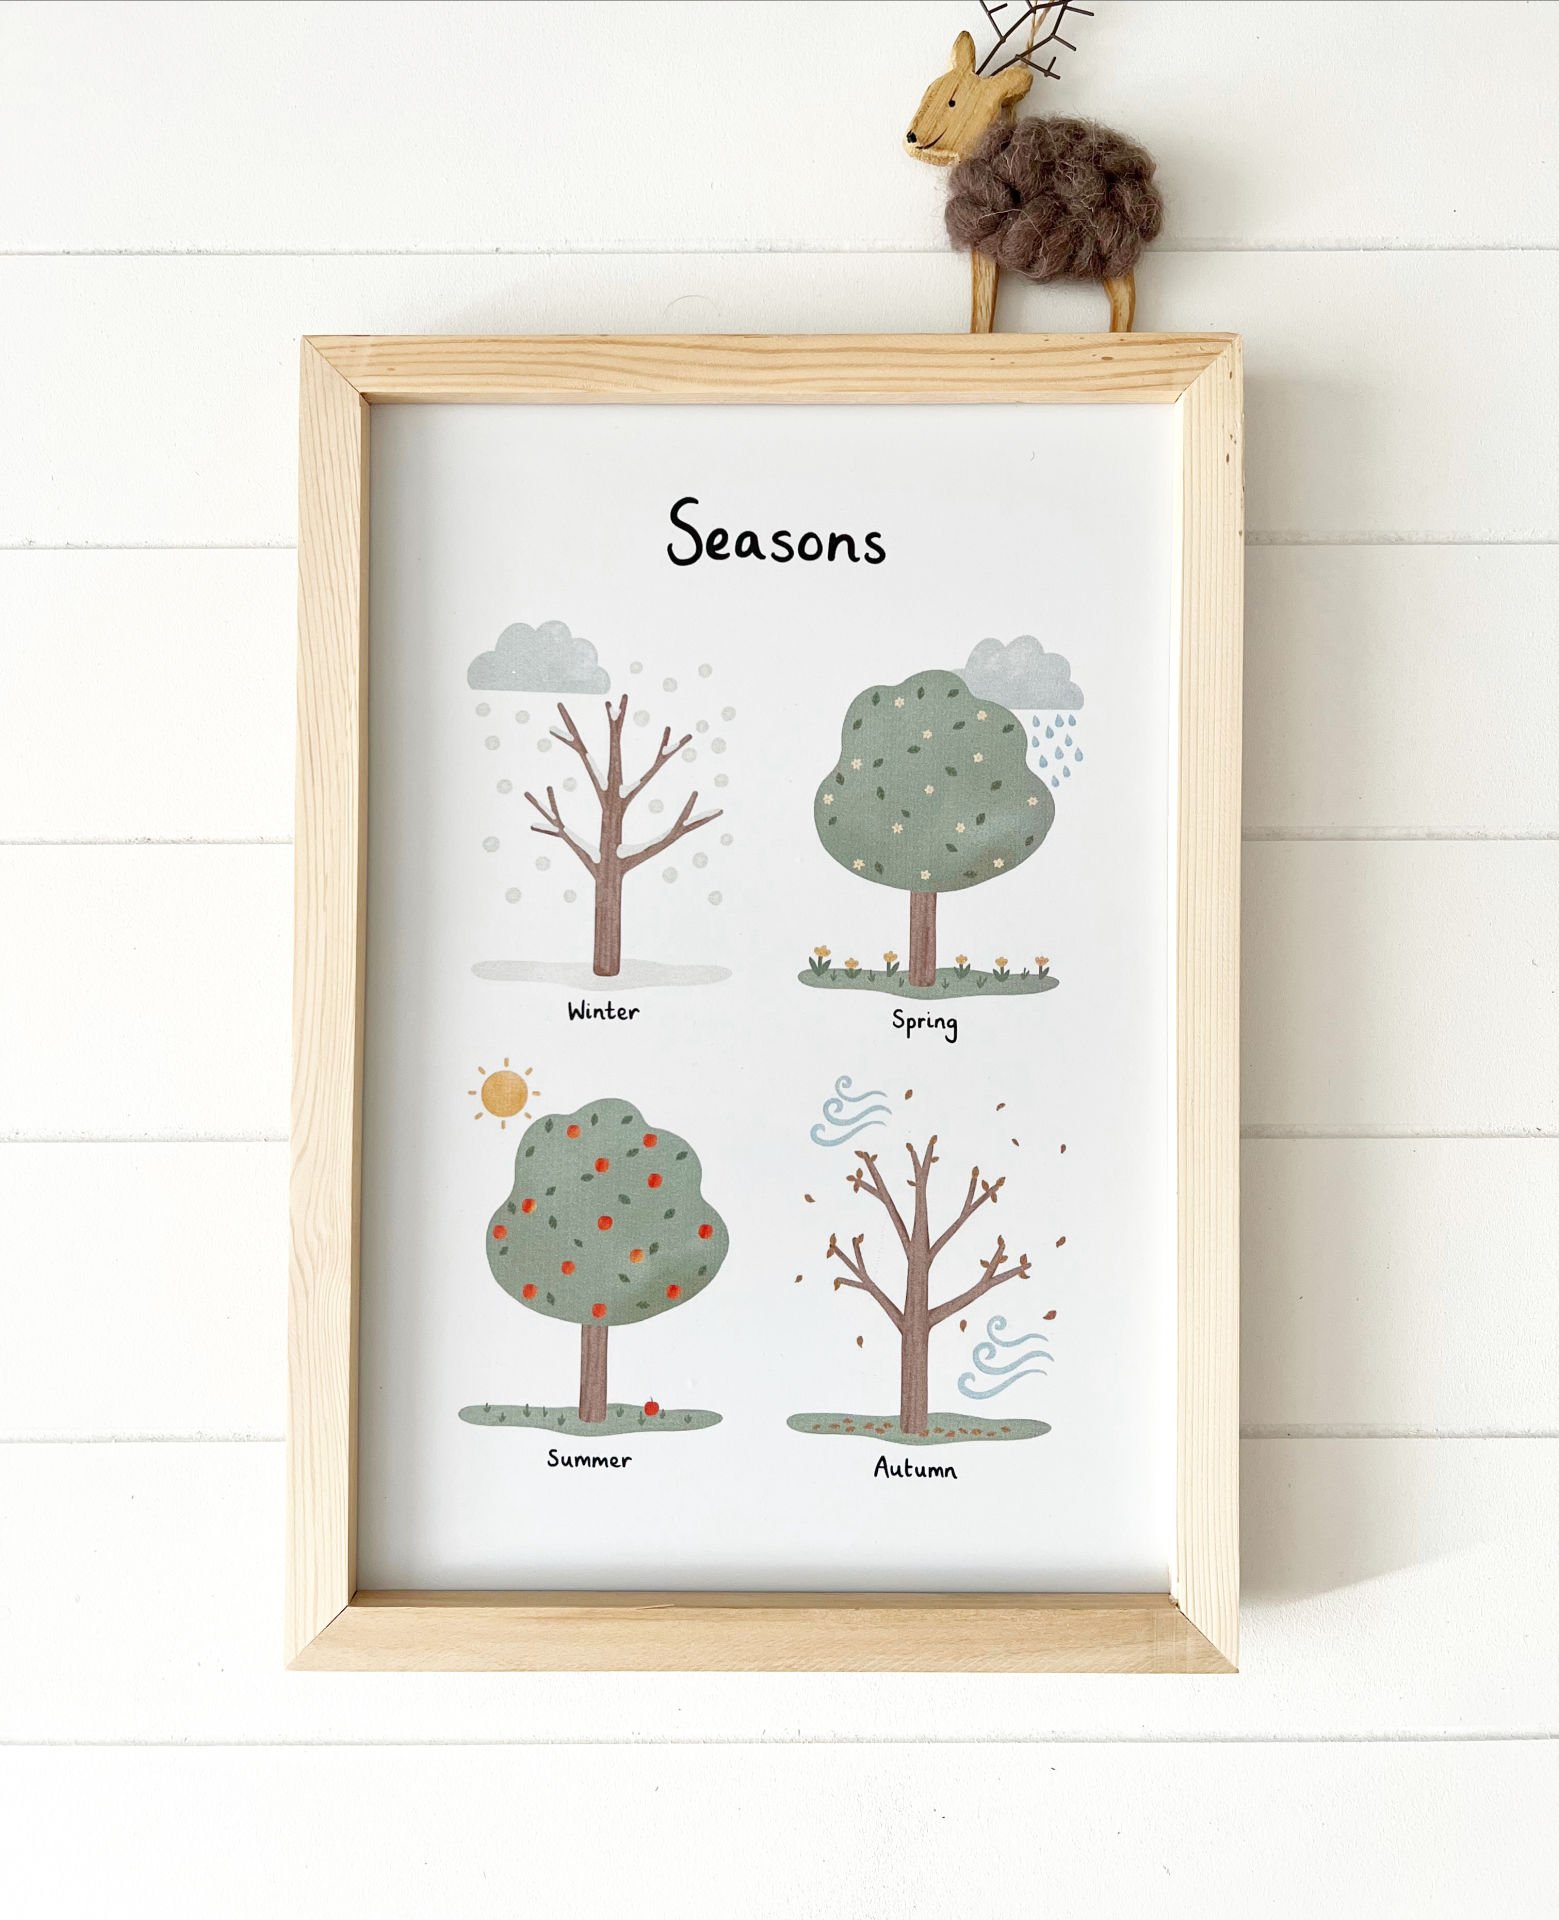 Mevsimler Temalı Posterli Ahşap Çerçeve Seasons